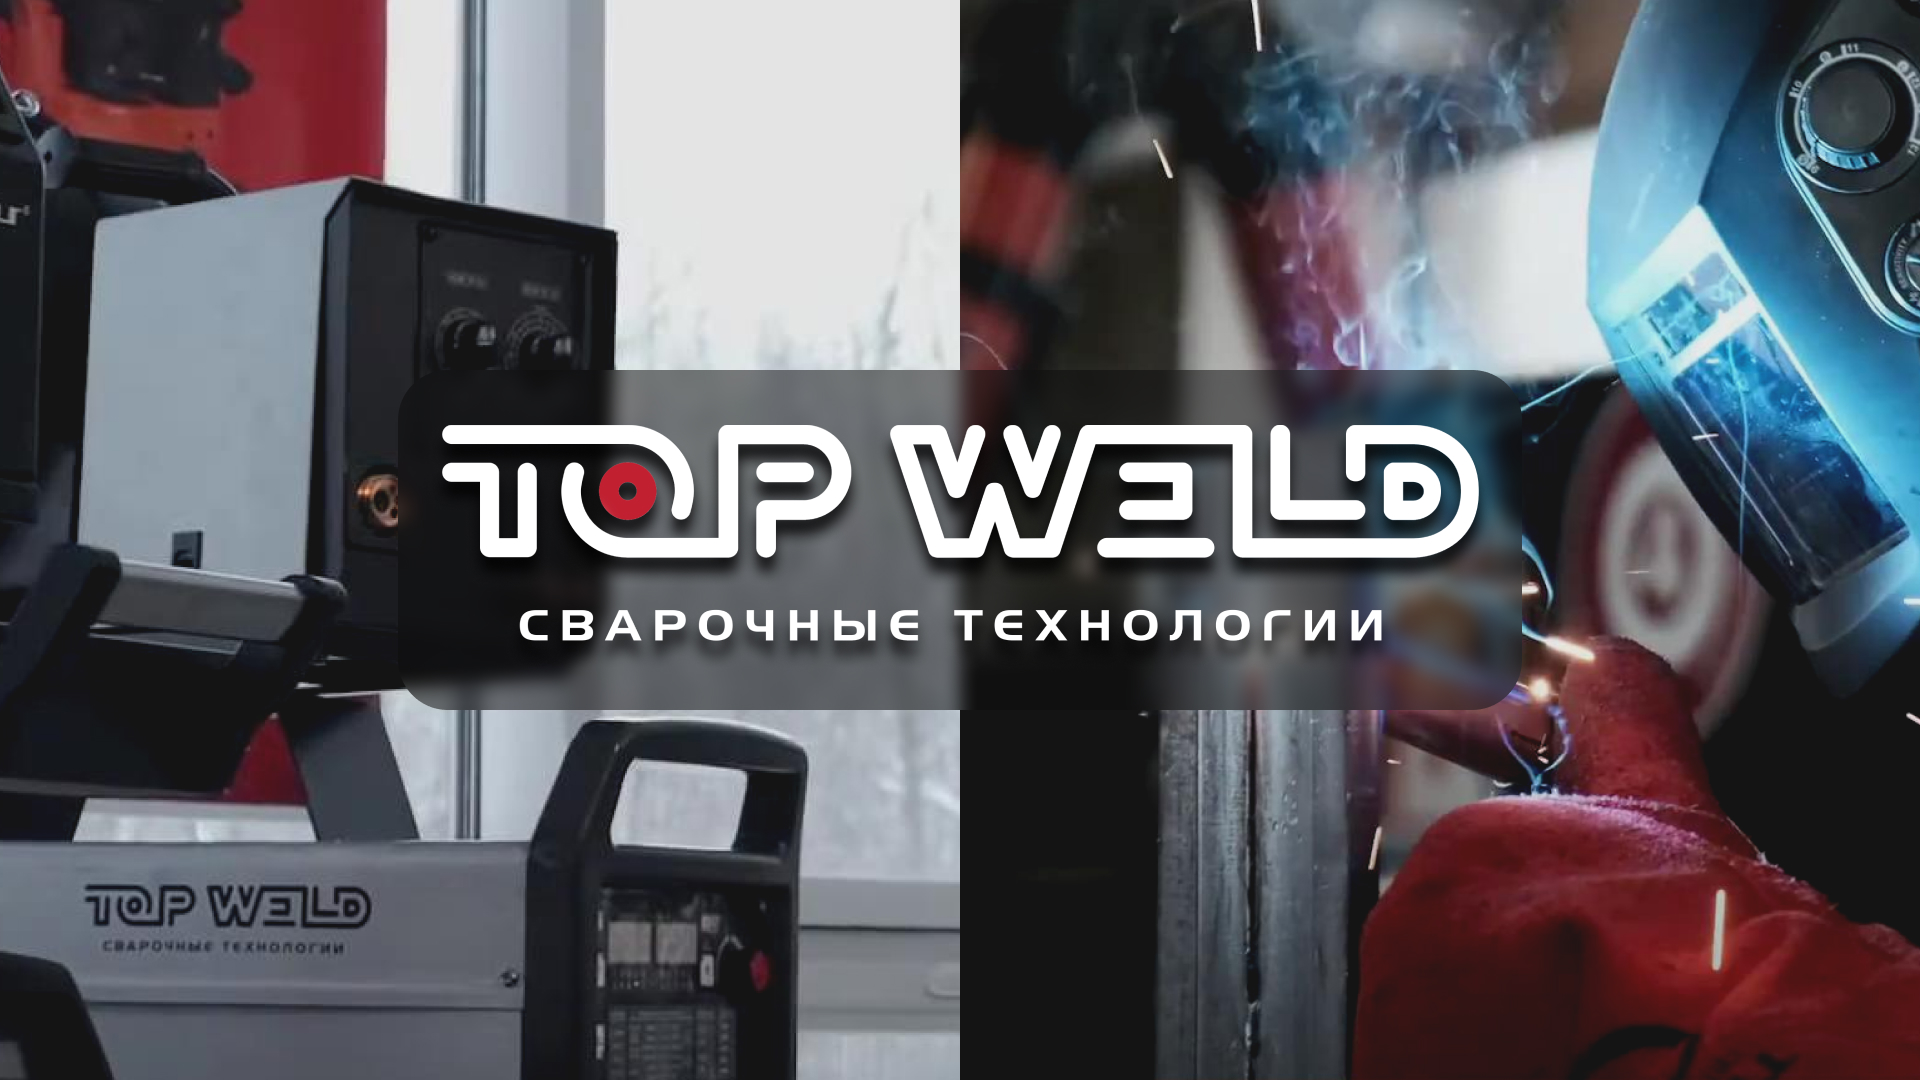 Top Weld: сварочные технологии и сварочные материалы [промо о компании]